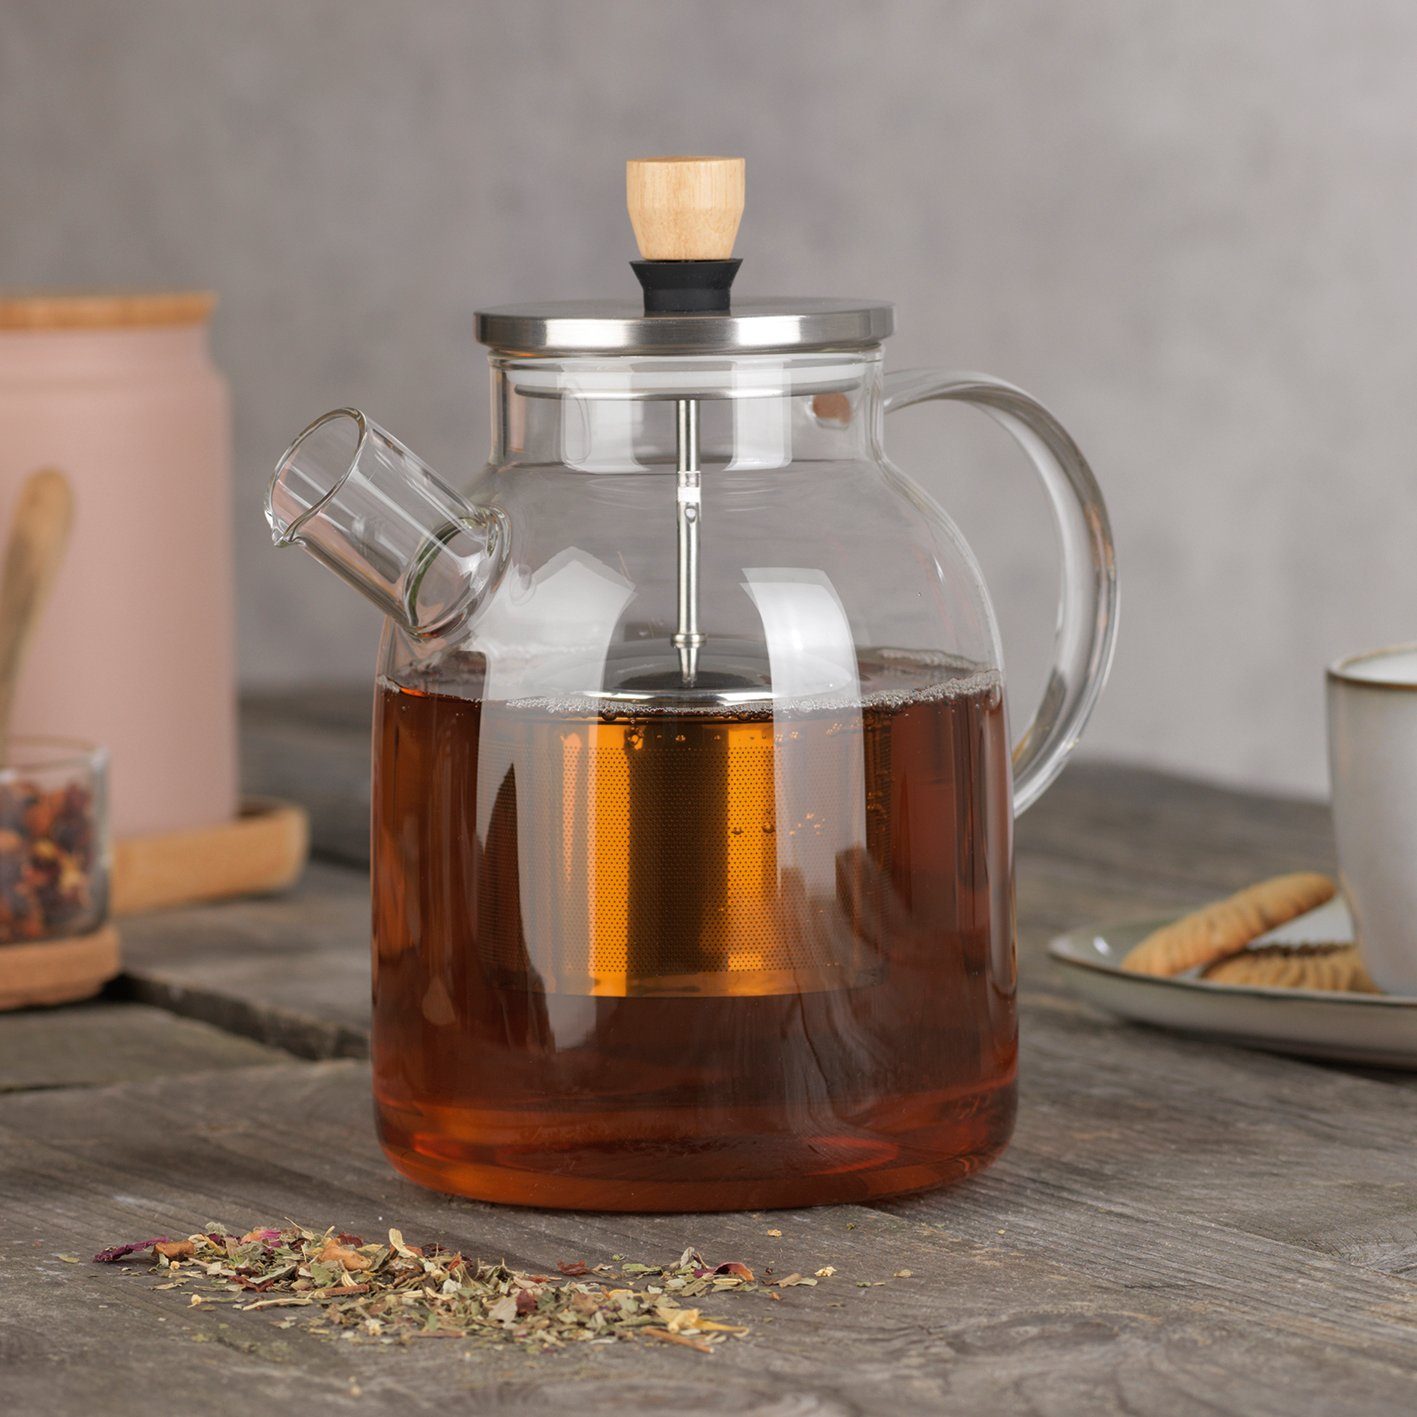 BEEM Teekanne geeignet für Stövchen, 1.5 l, hitzebeständige Glaskanne mit Teesieb, Teefilter 1,5l